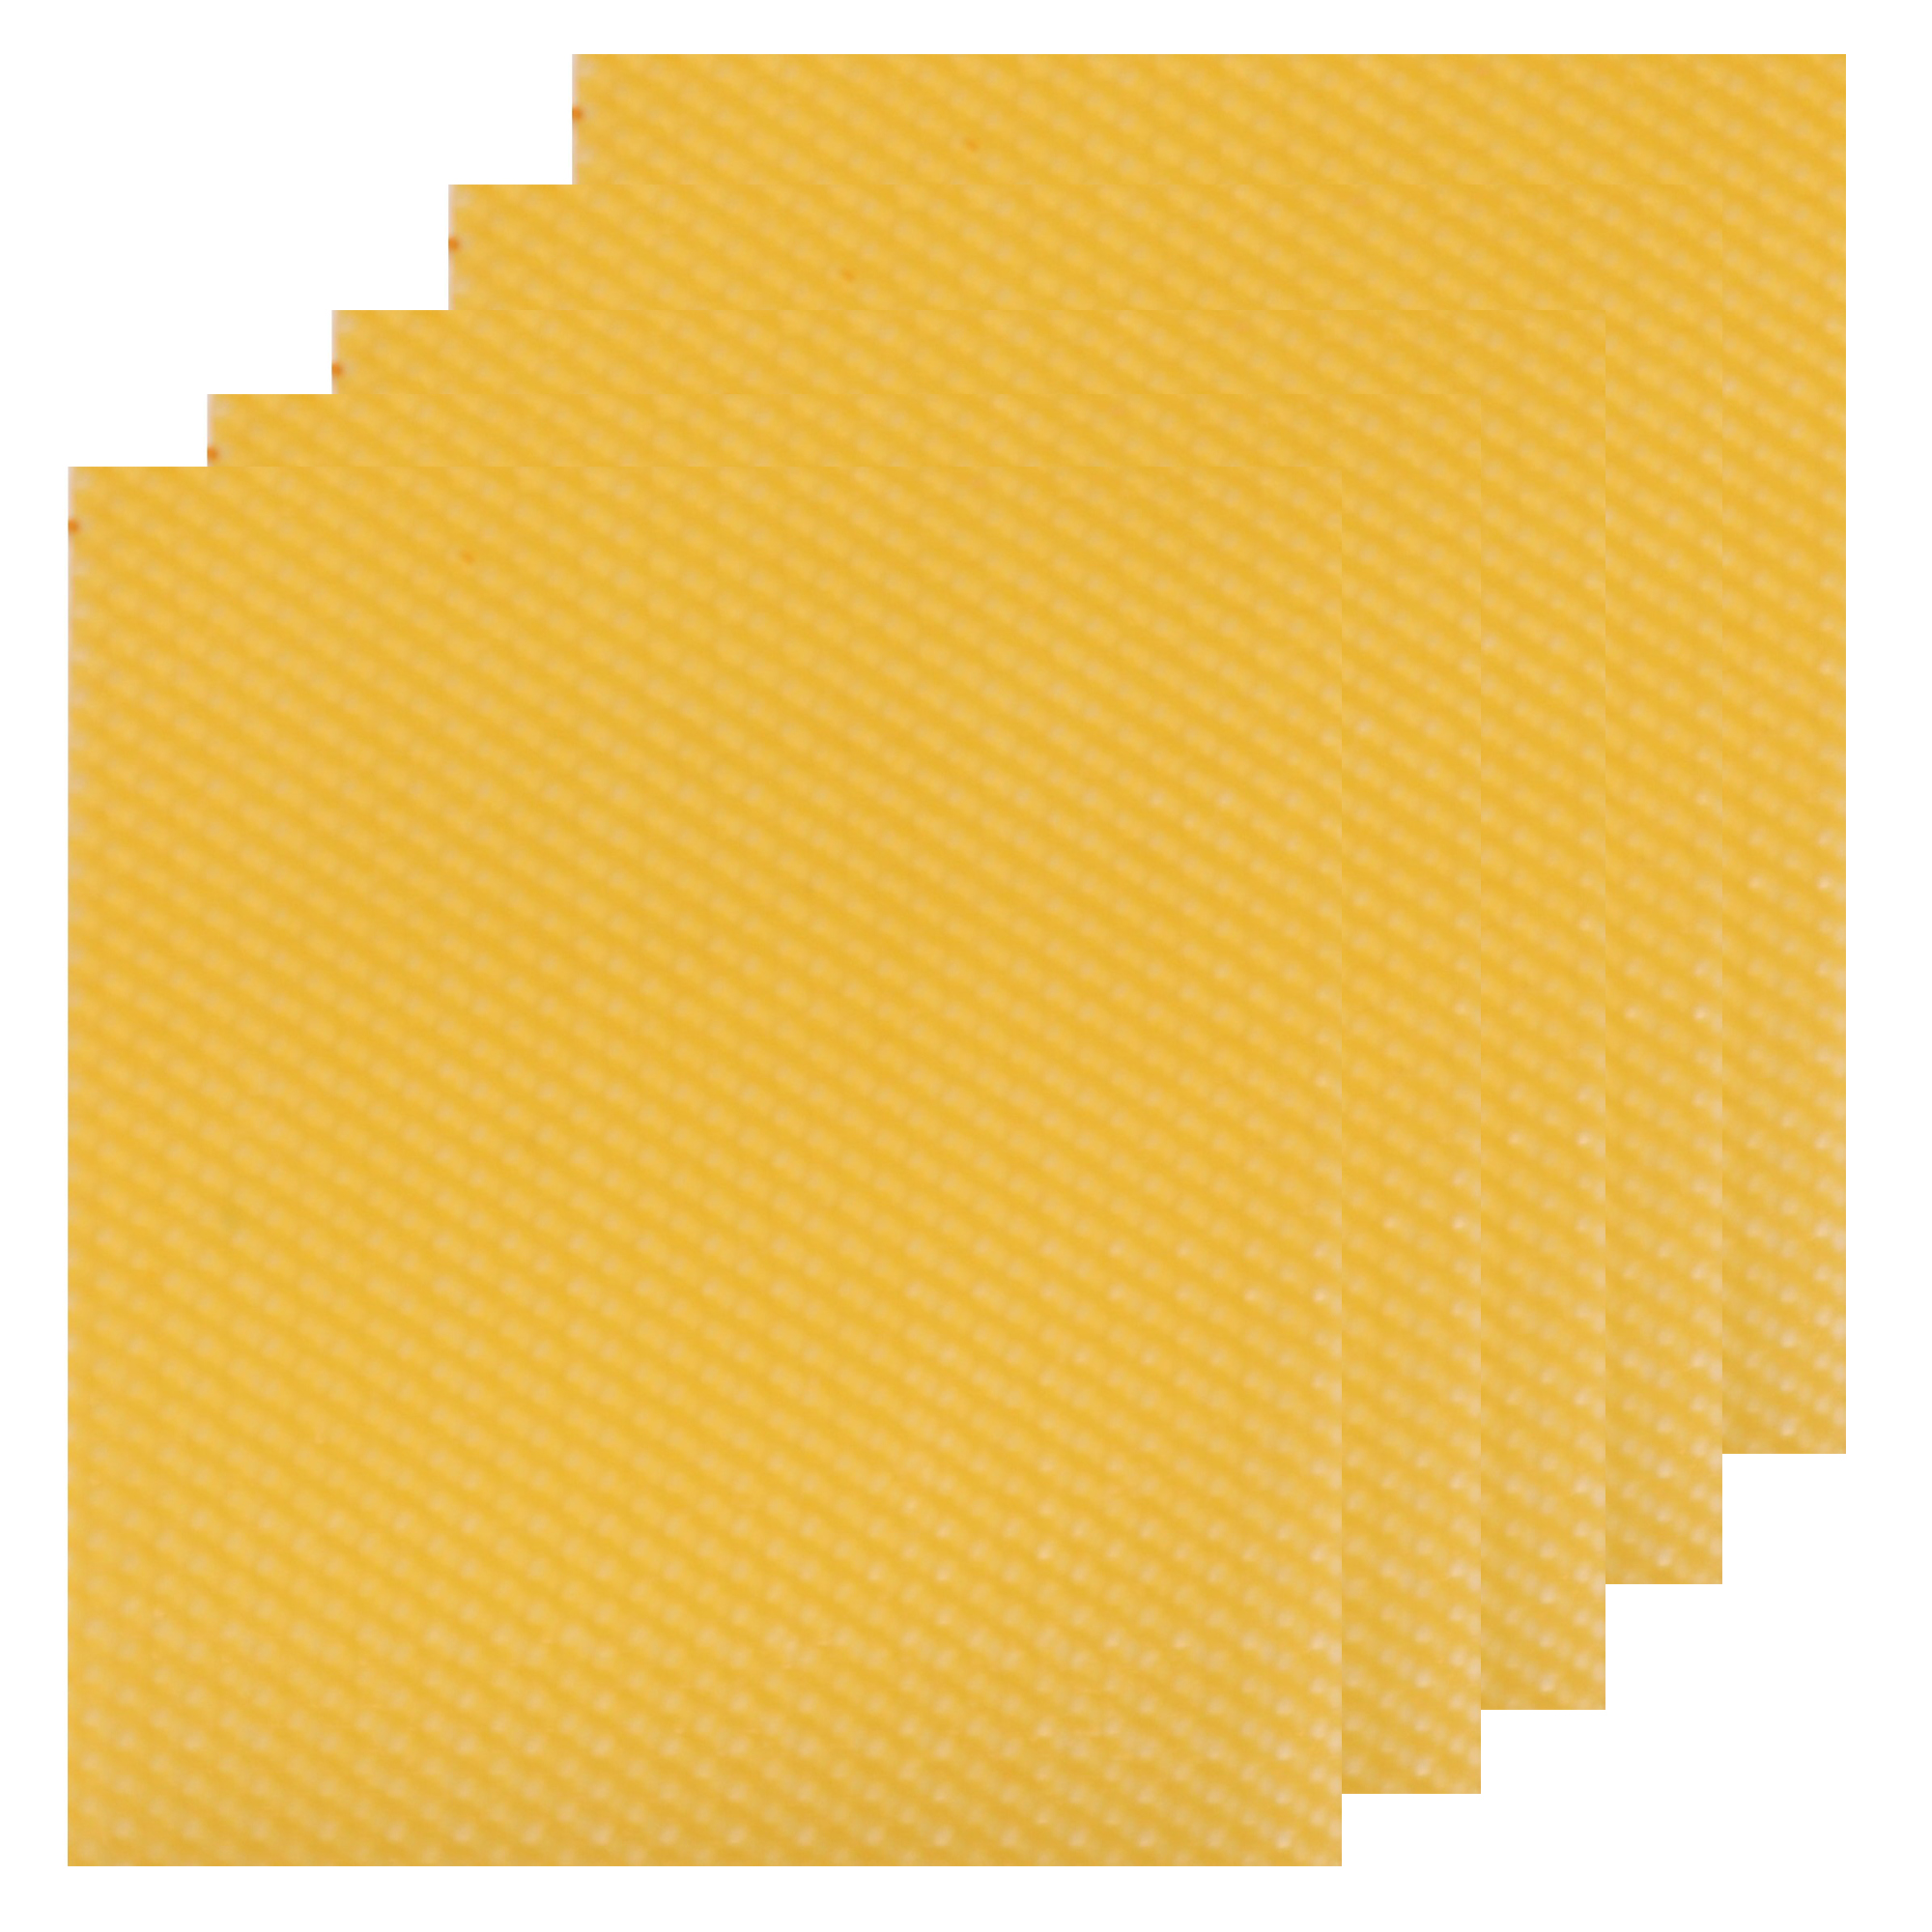  ورق موم عسل مدل بیزوکس مجموعه 5 عددی